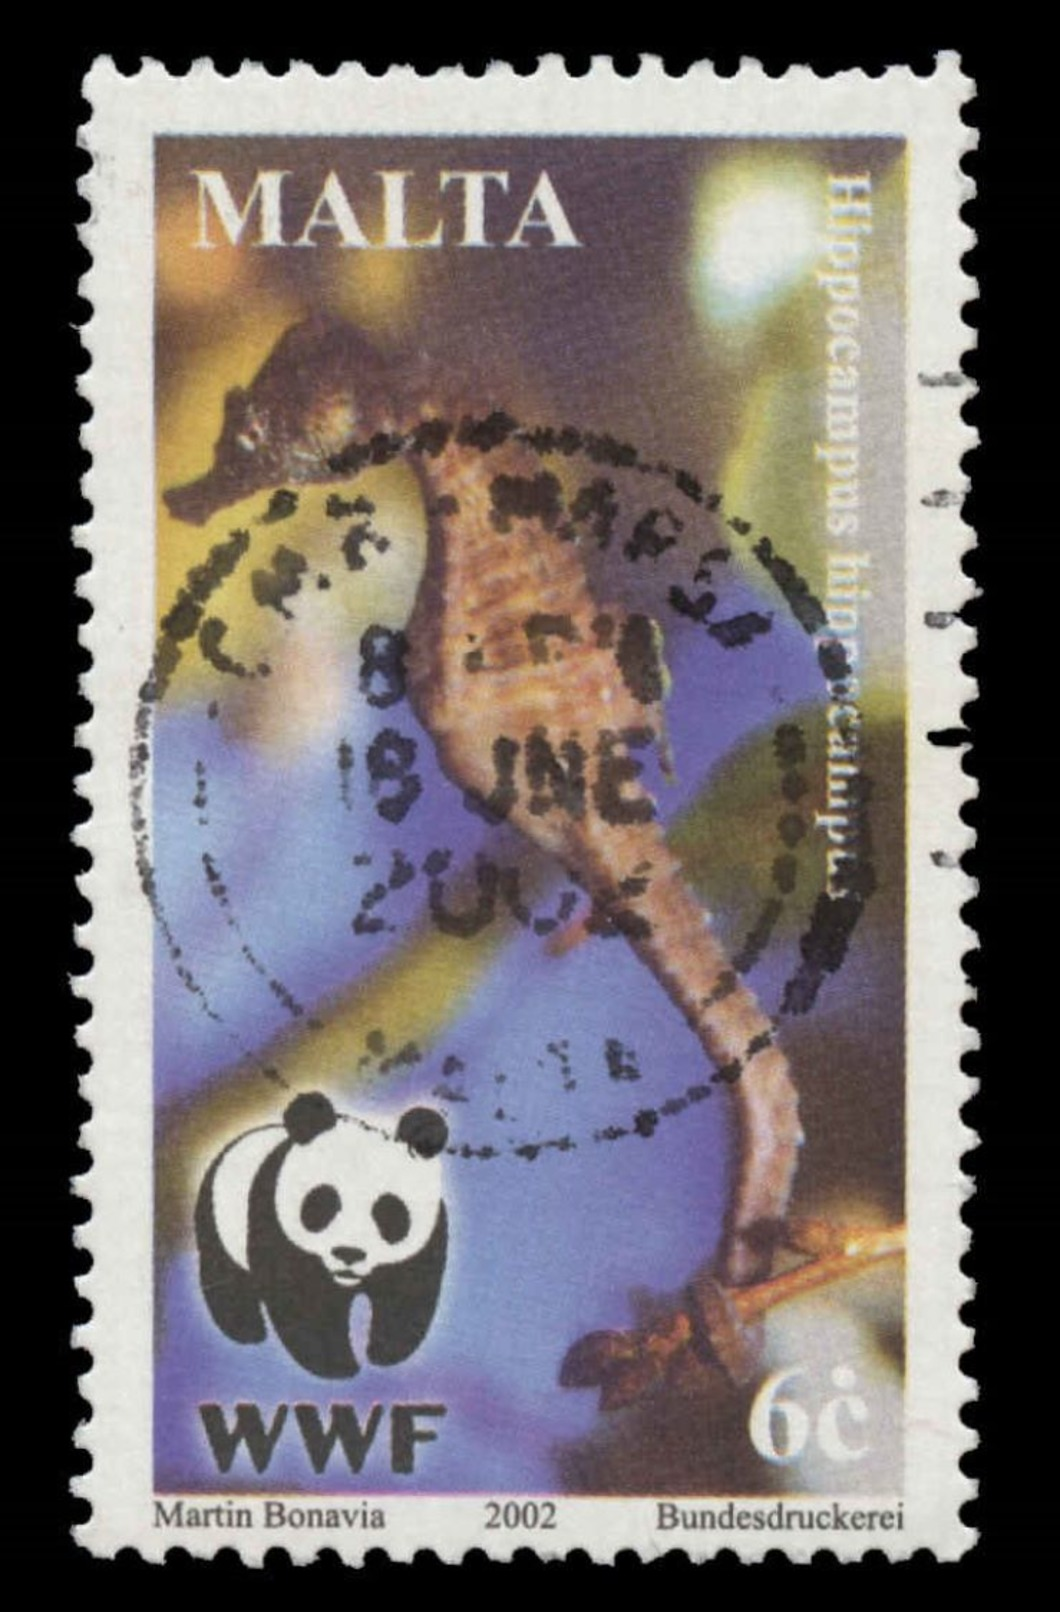 Malta Scott #1071, 6¢ Multicolored (2002) Worldwide Fund For Nature, Used - Malte